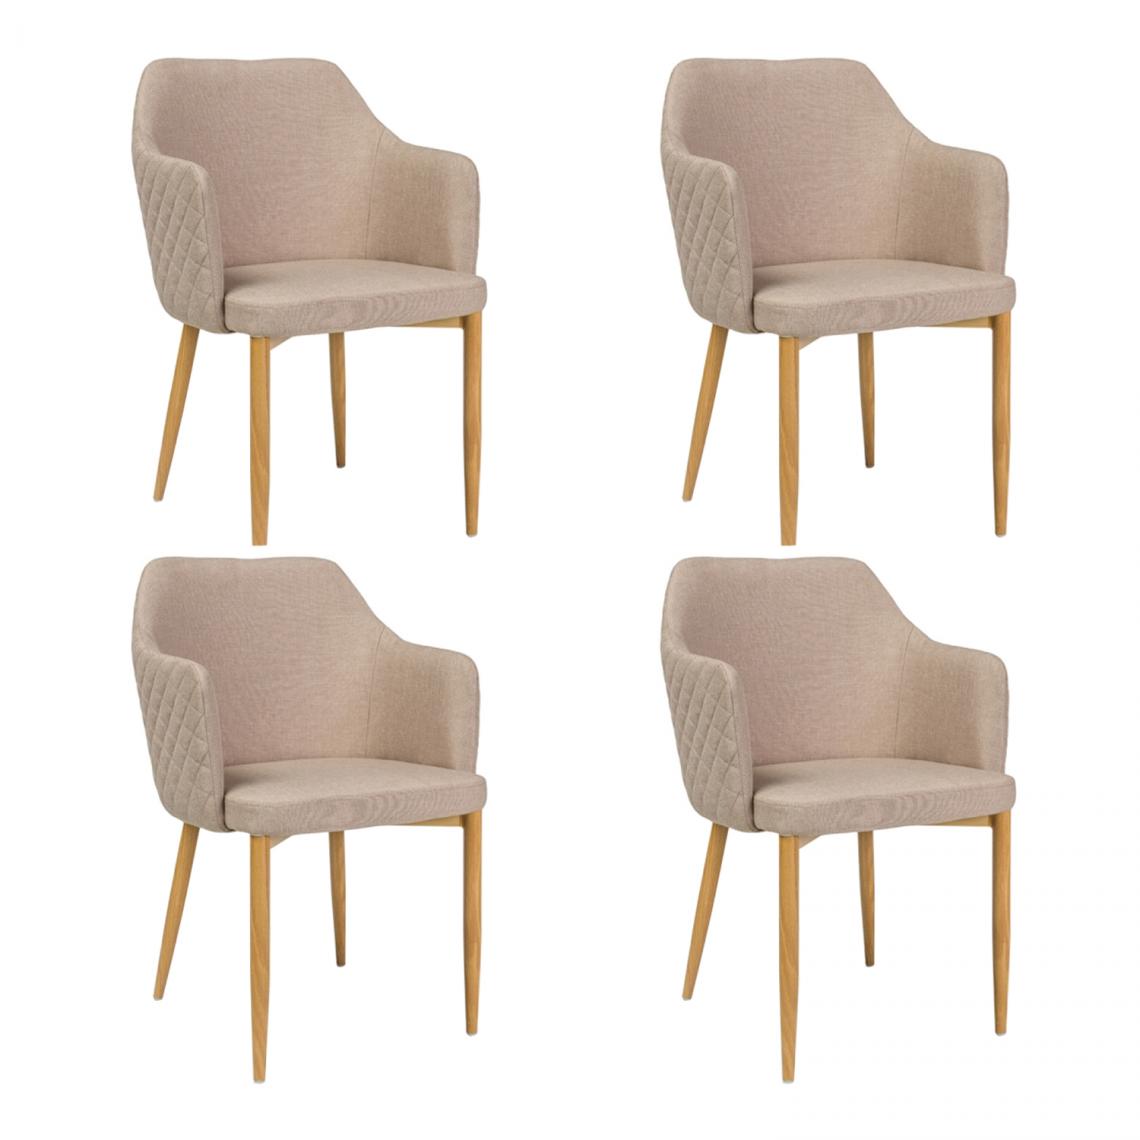 Hucoco - ASTOP - Lot de 4 chaise style glamour - 84x46x46 cm - Tissu haute qualité - Chaise élégante - Beige - Chaises